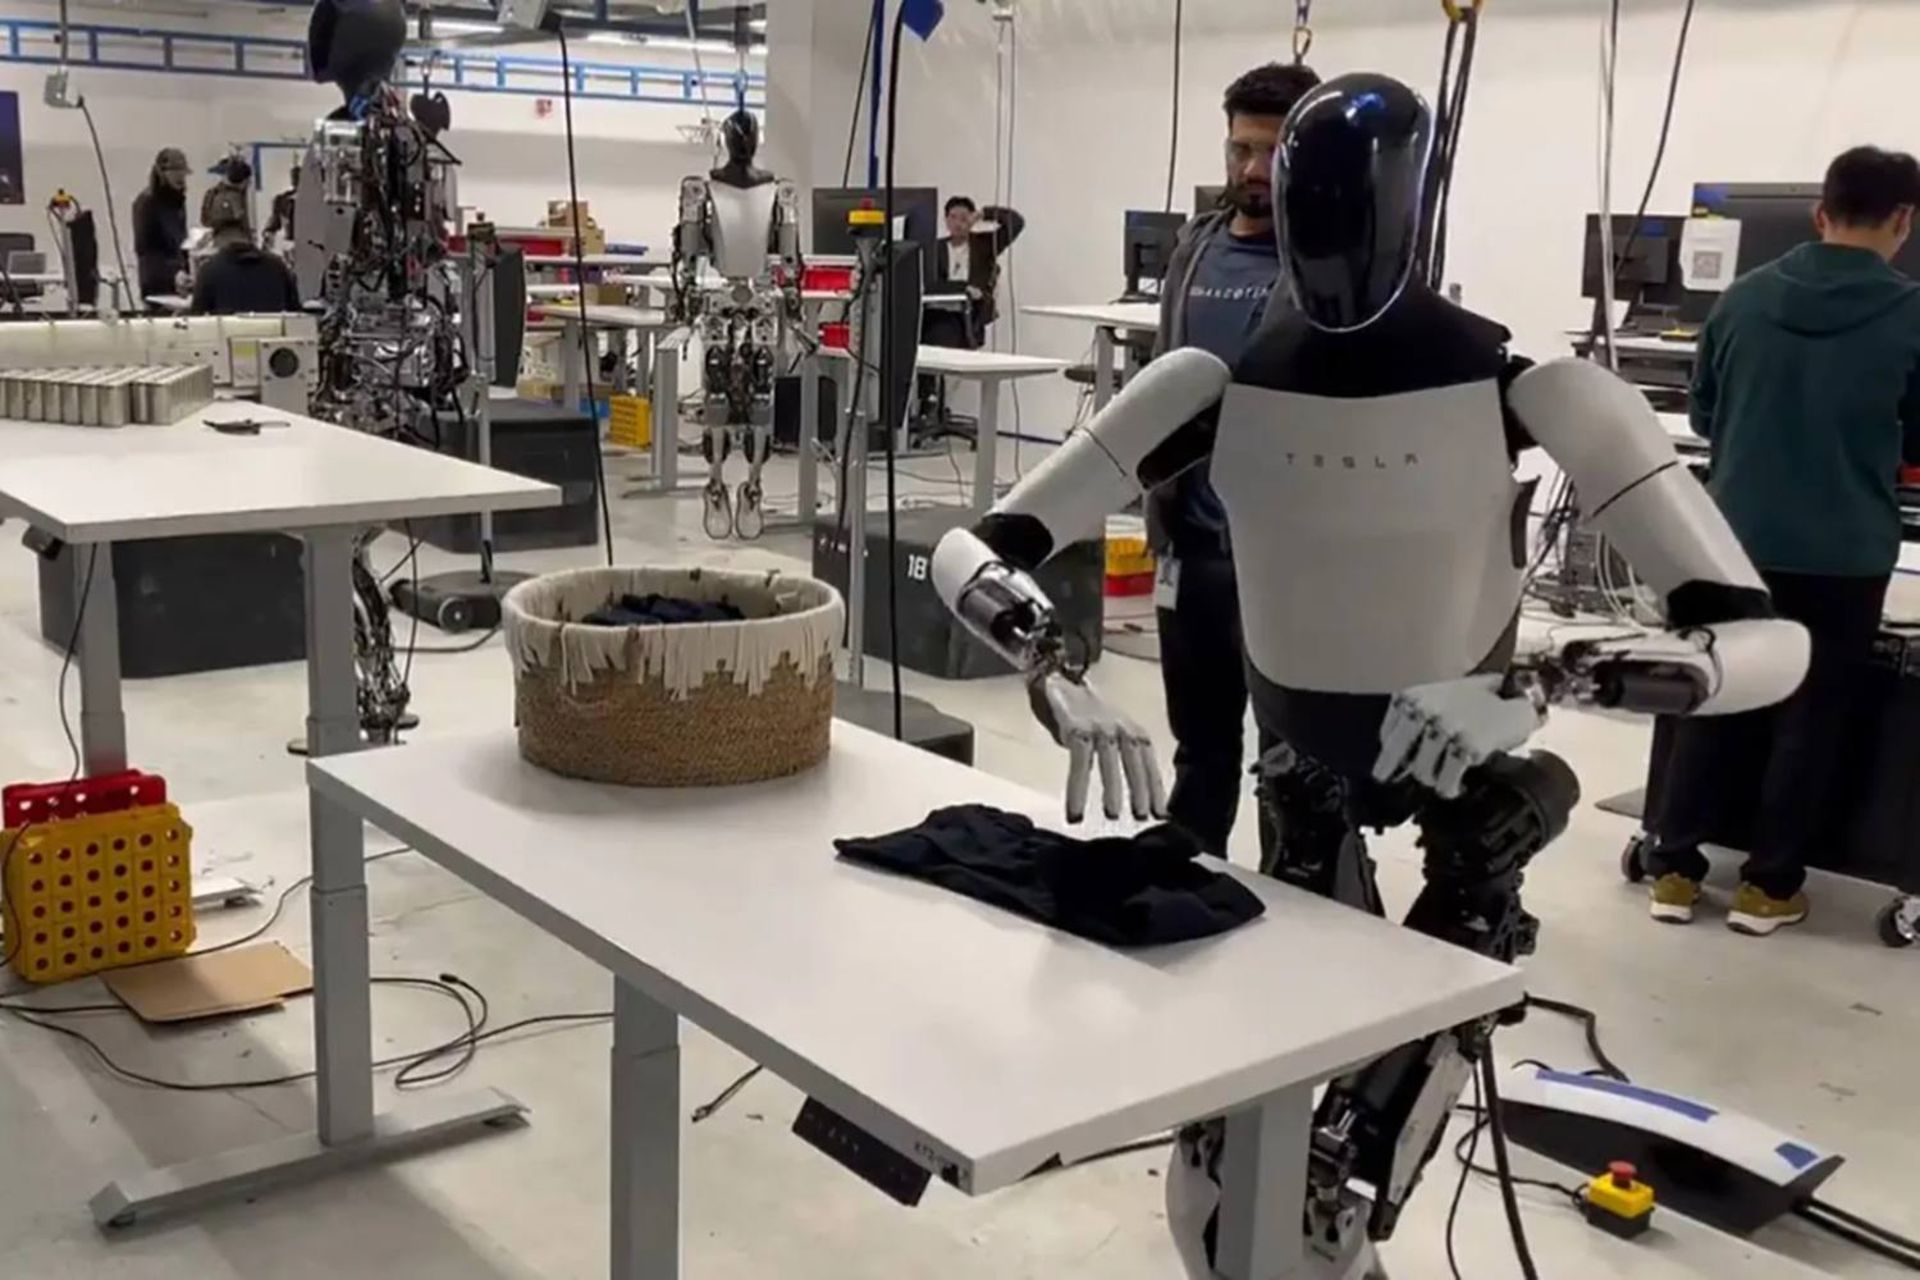 ربات تسلا آپتیموس درحال تا کردن لباس روی میز